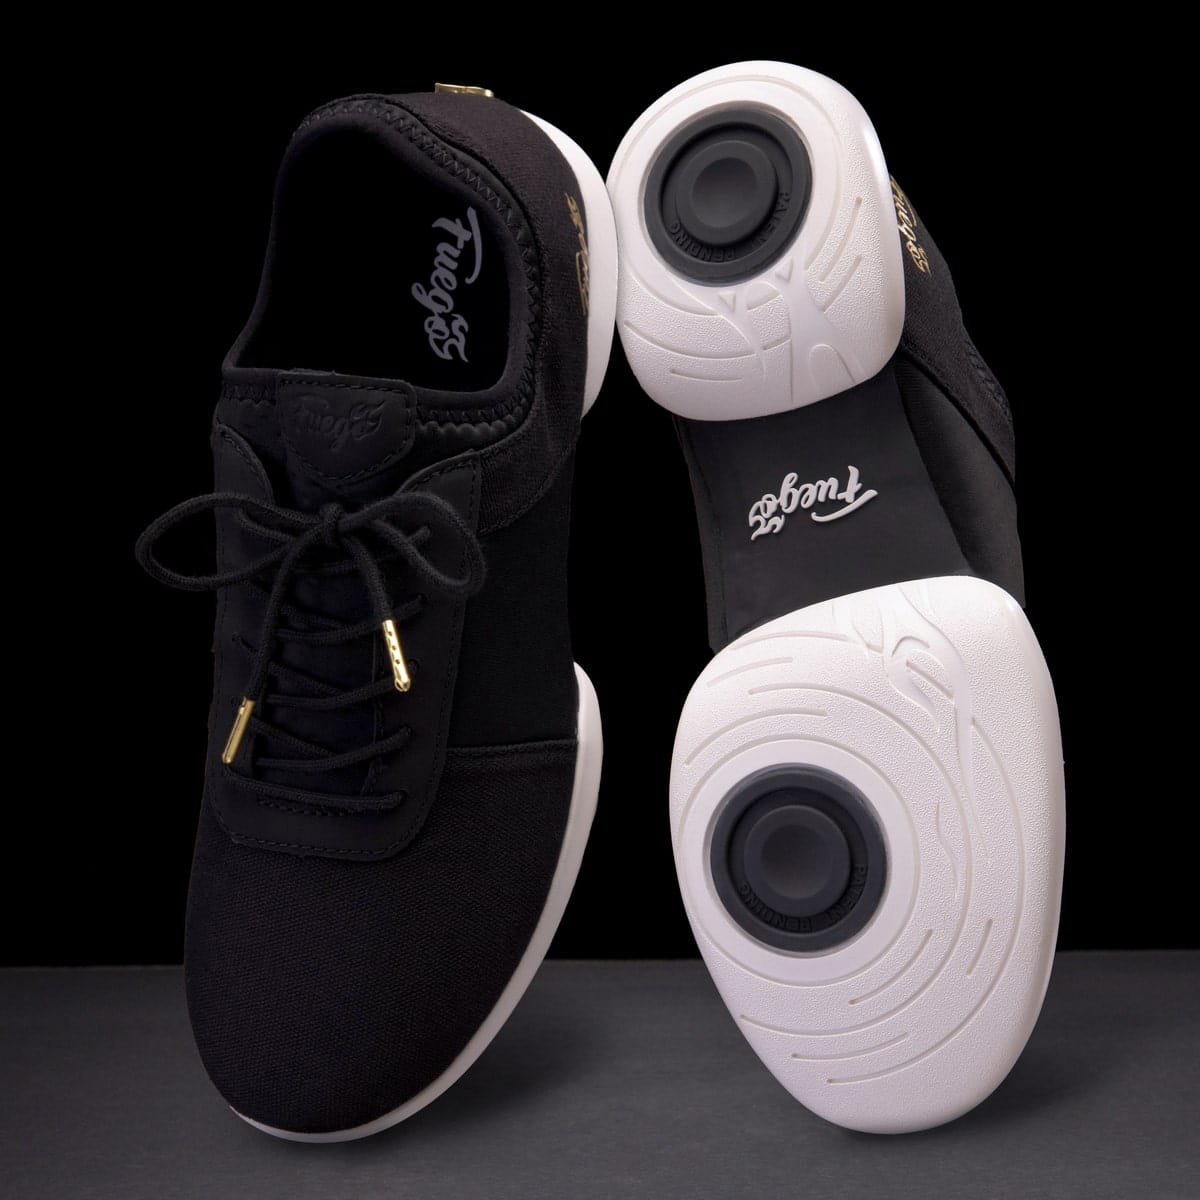 Capezio DS11C Unisex Black Fierce Dansneaker Hip Hop Dance Shoes Size 13 M  Kids